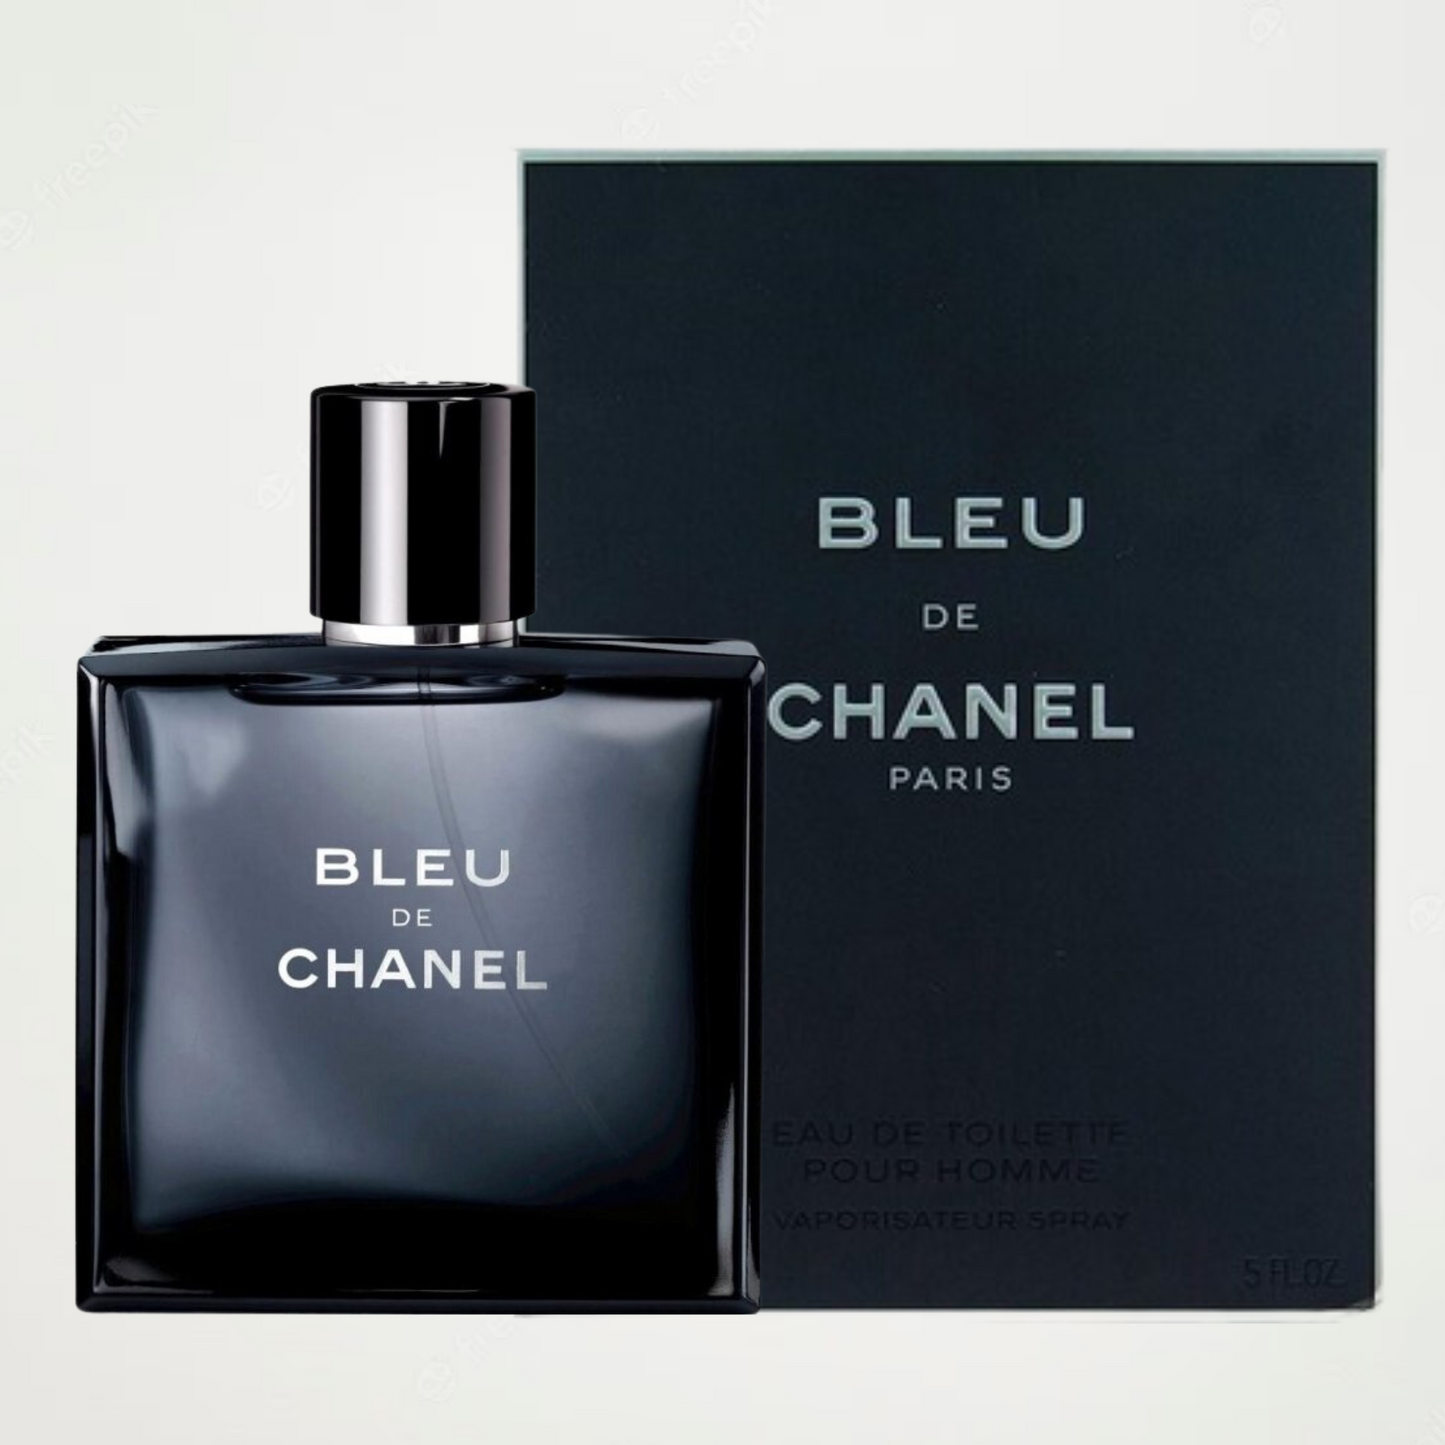 WATCH BEFORE YOU BUY Bleu De Chanel Review 